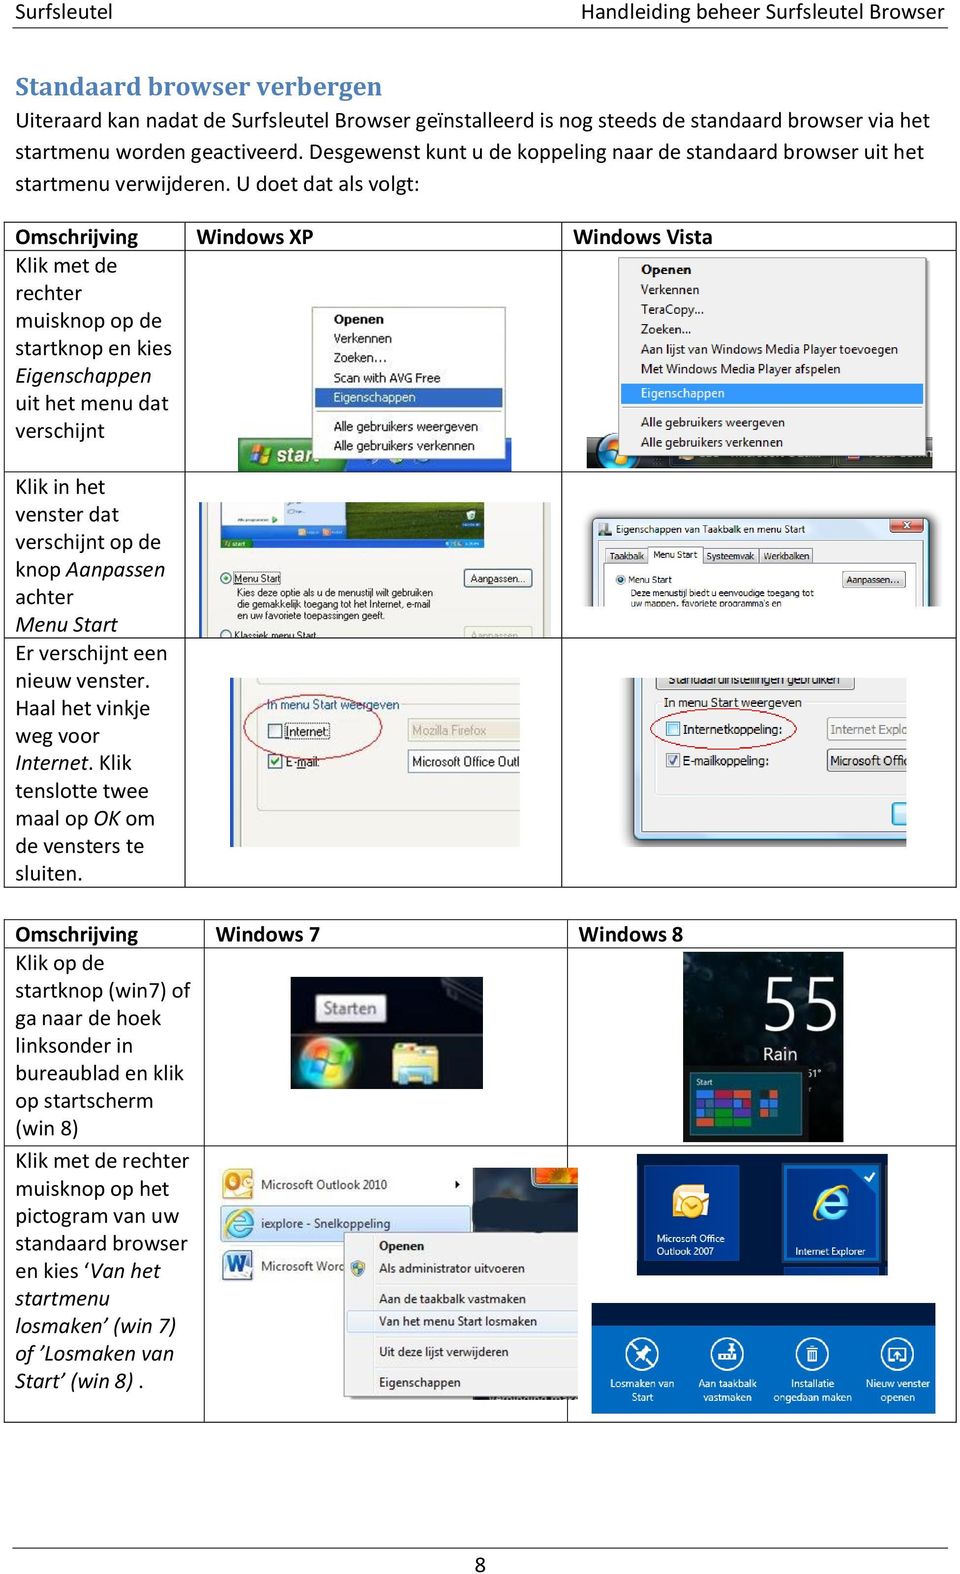 U doet dat als volgt: Omschrijving Windows XP Windows Vista Klik met de rechter muisknop op de startknop en kies Eigenschappen uit het menu dat verschijnt Klik in het venster dat verschijnt op de